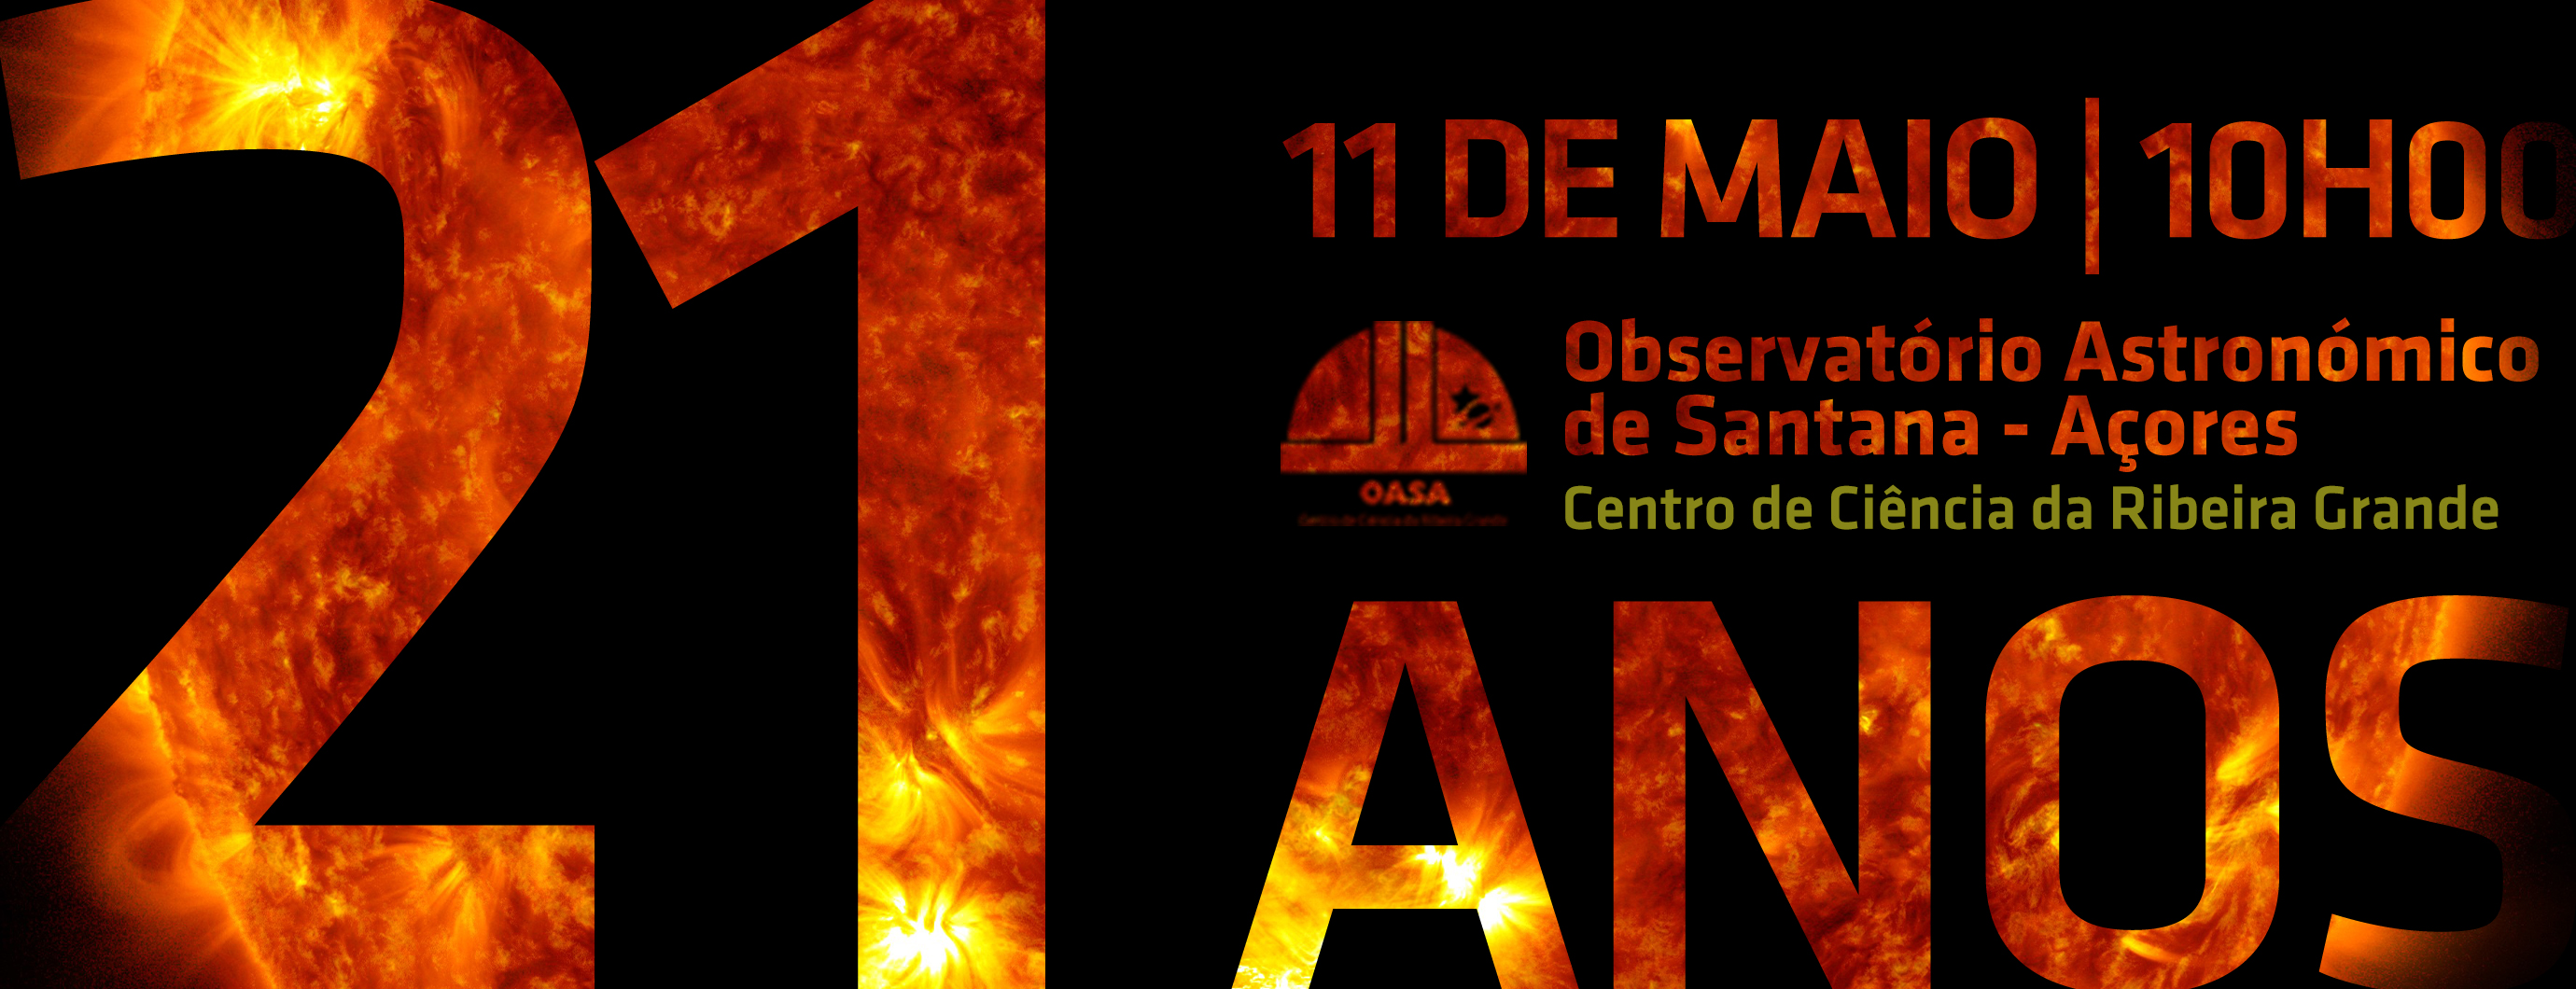 Aniversário 21 anos do Observatório Astronómico de Santana - Açores